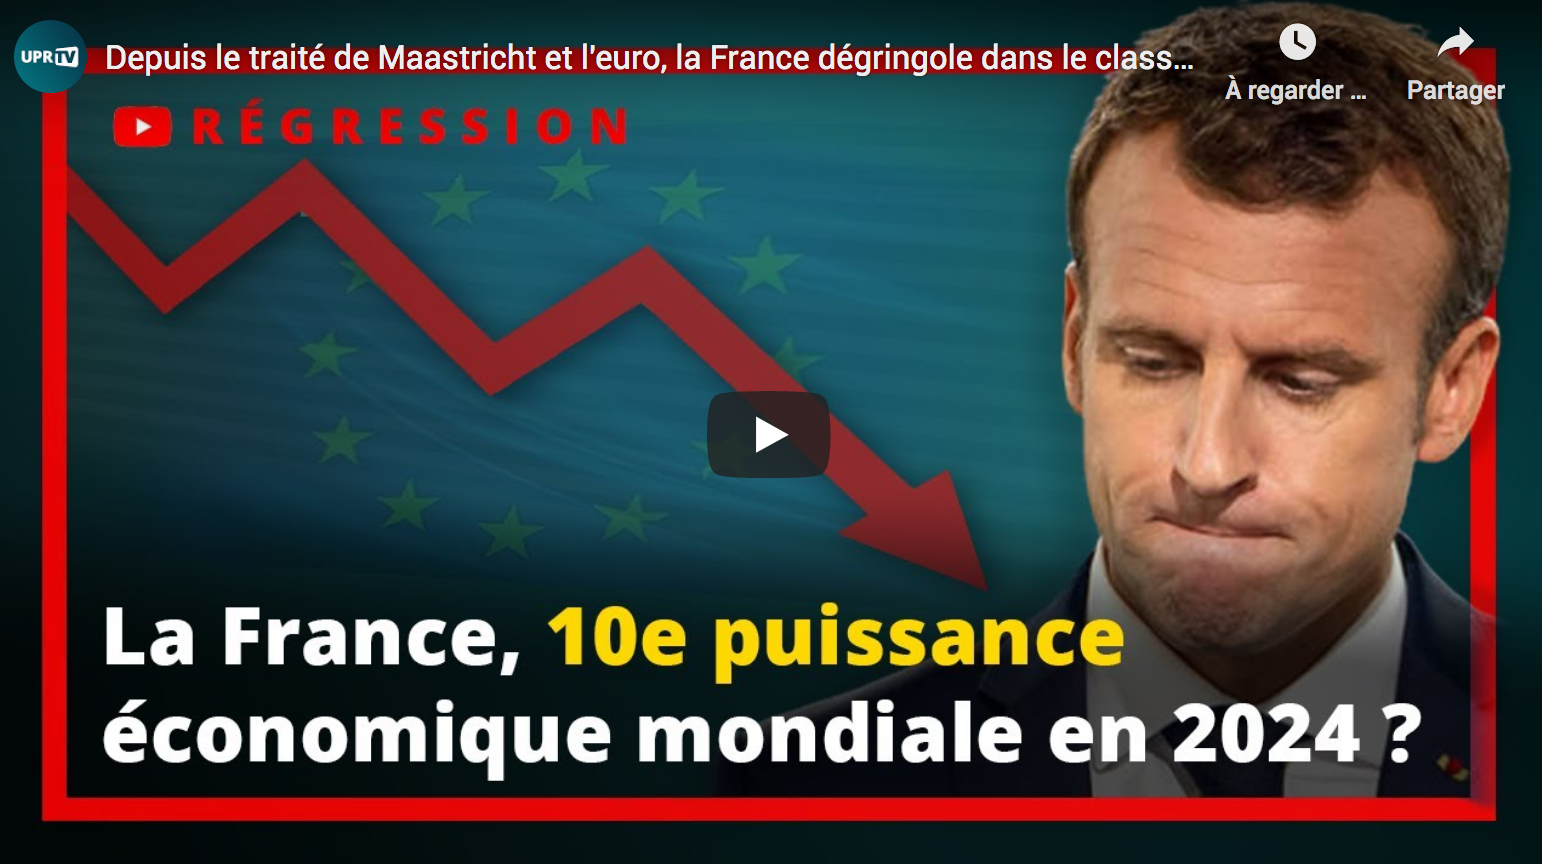 Depuis le traité de Maastricht et l’euro, la France dégringole dans le classement économique mondial (François Asselineau)